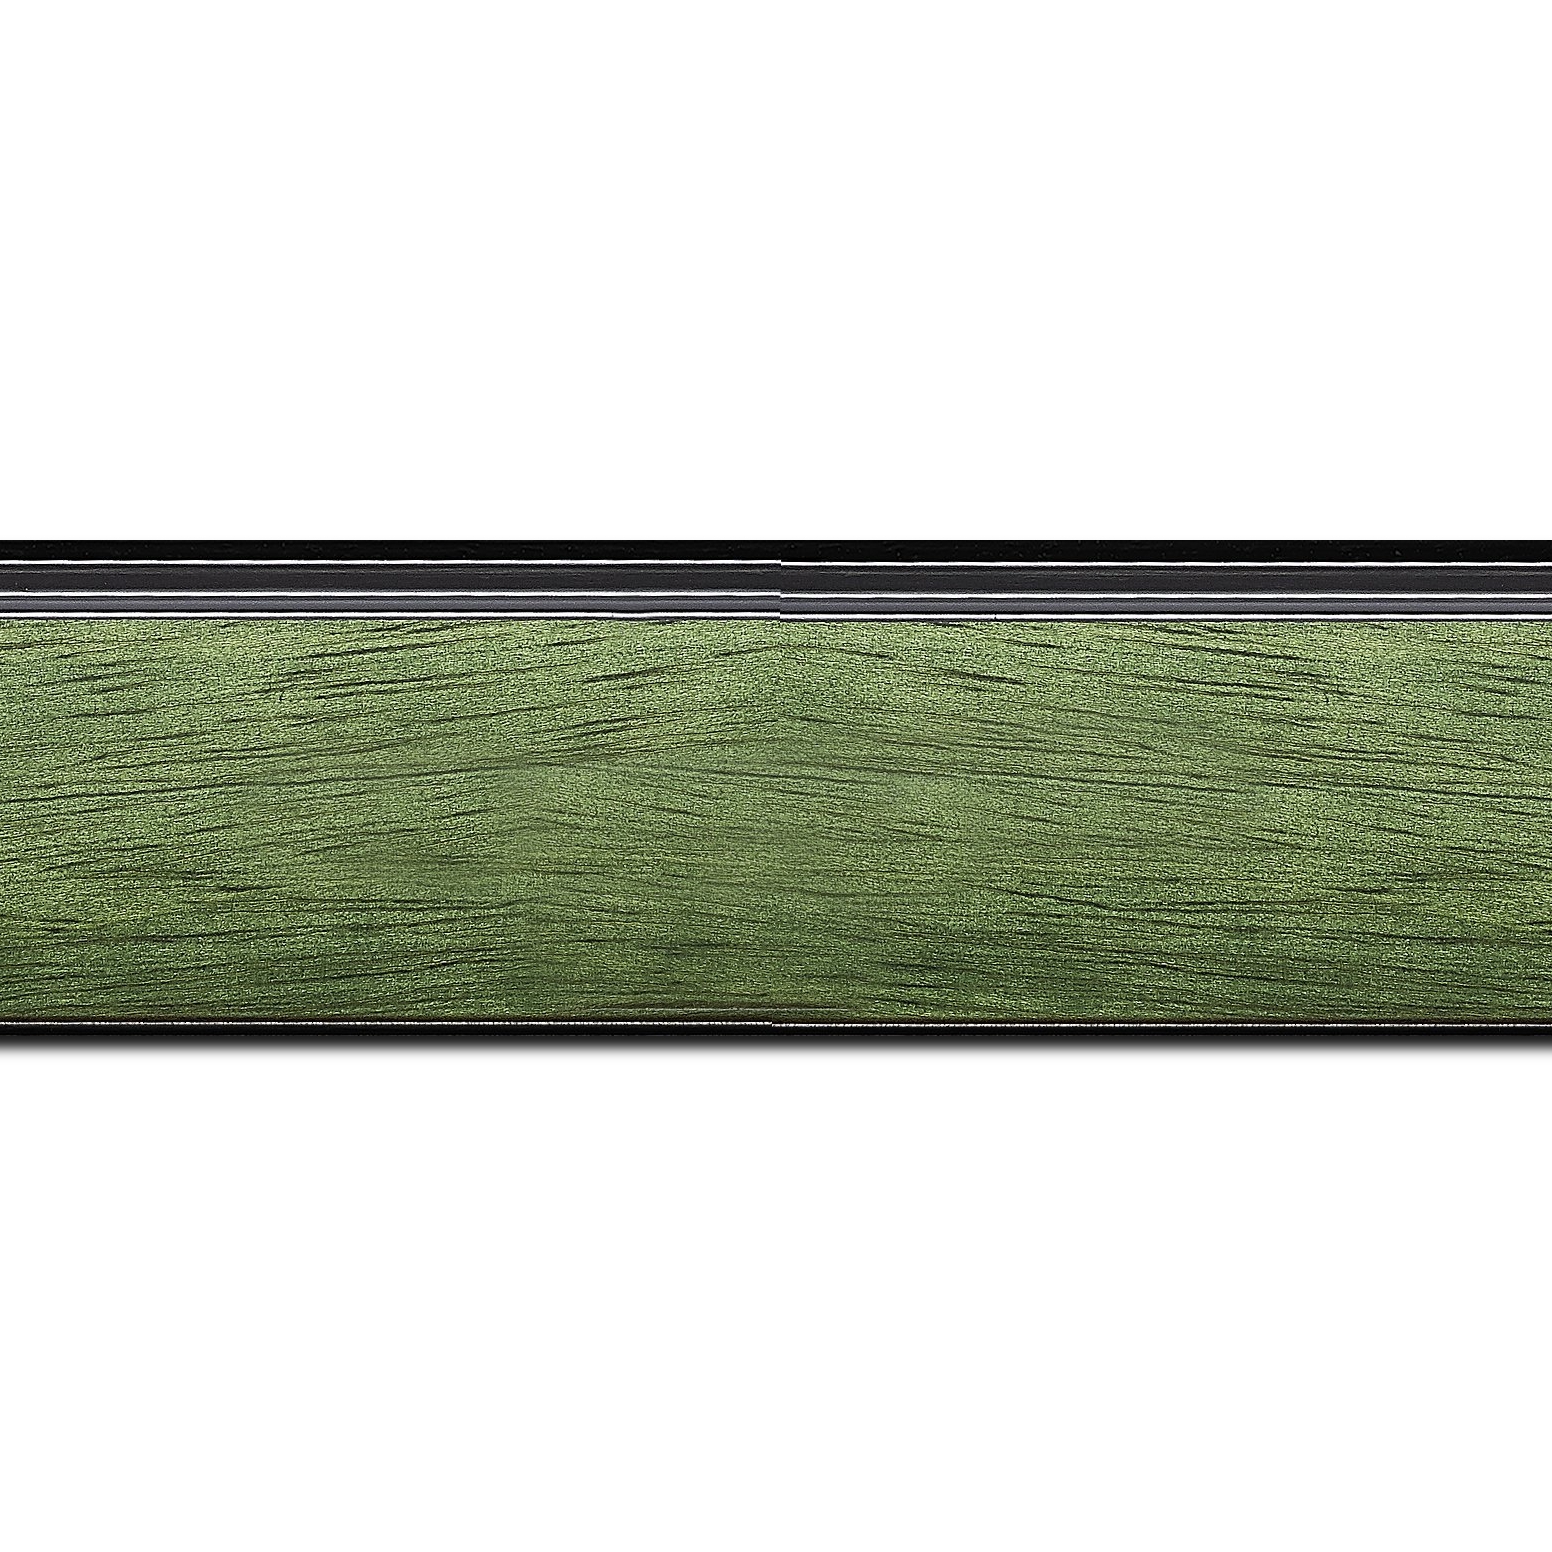 Pack par 12m, bois profil incliné en pente largeur 4.8cm couleur vert sapin satiné surligné par une gorge extérieure noire : originalité et élégance assurée (longueur baguette pouvant varier entre 2.40m et 3m selon arrivage des bois)